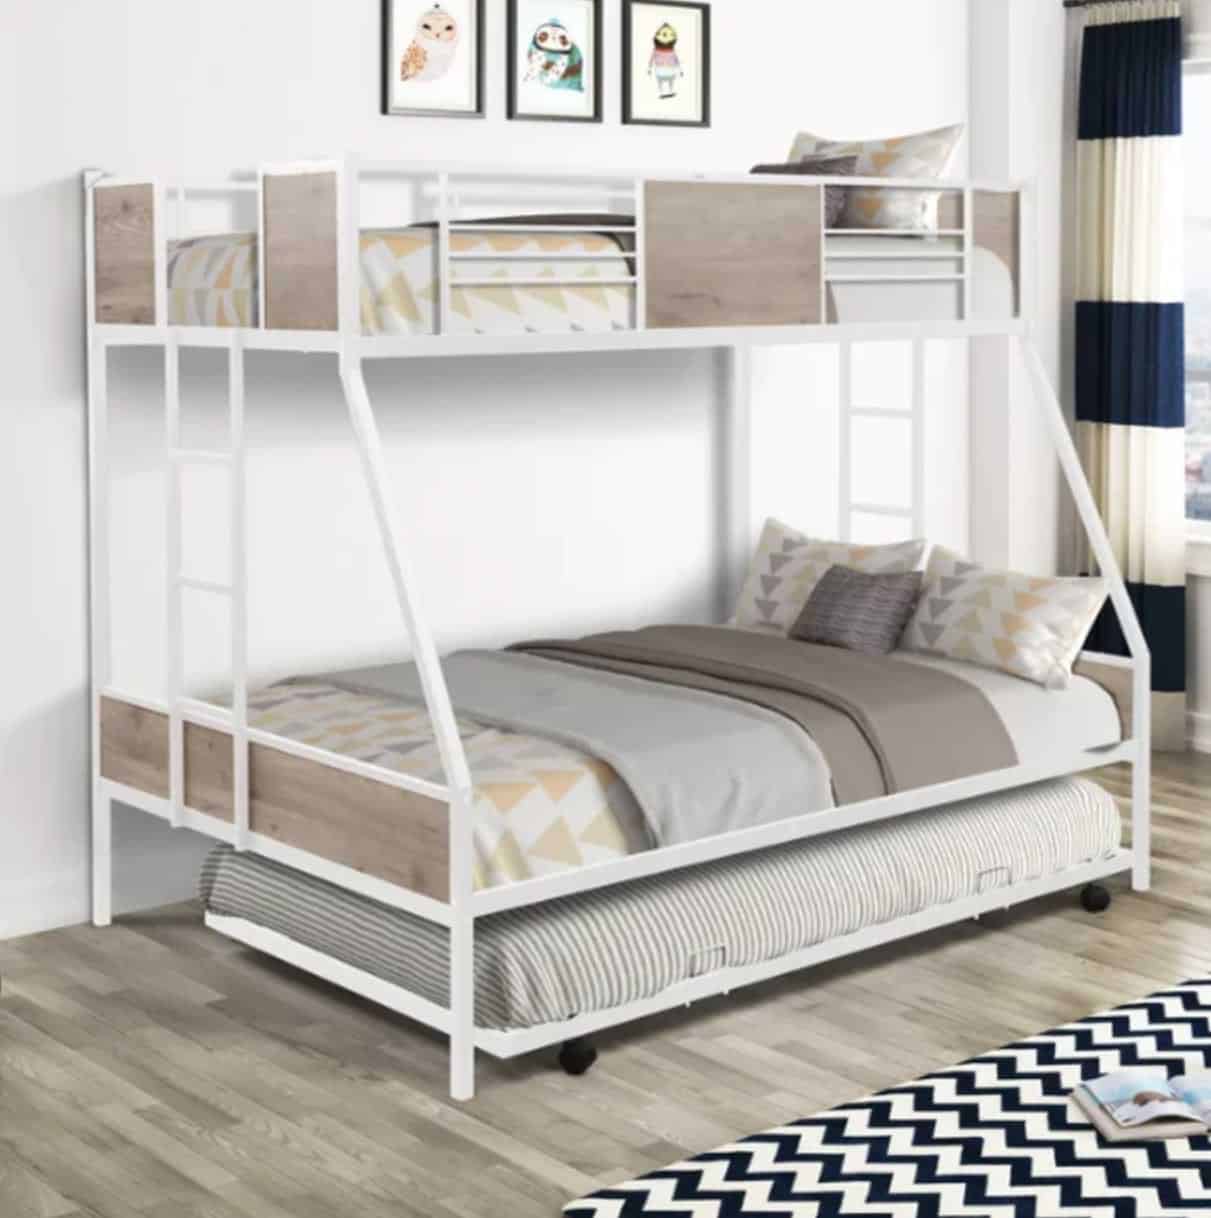 Sparkenzy white modern bunk bed